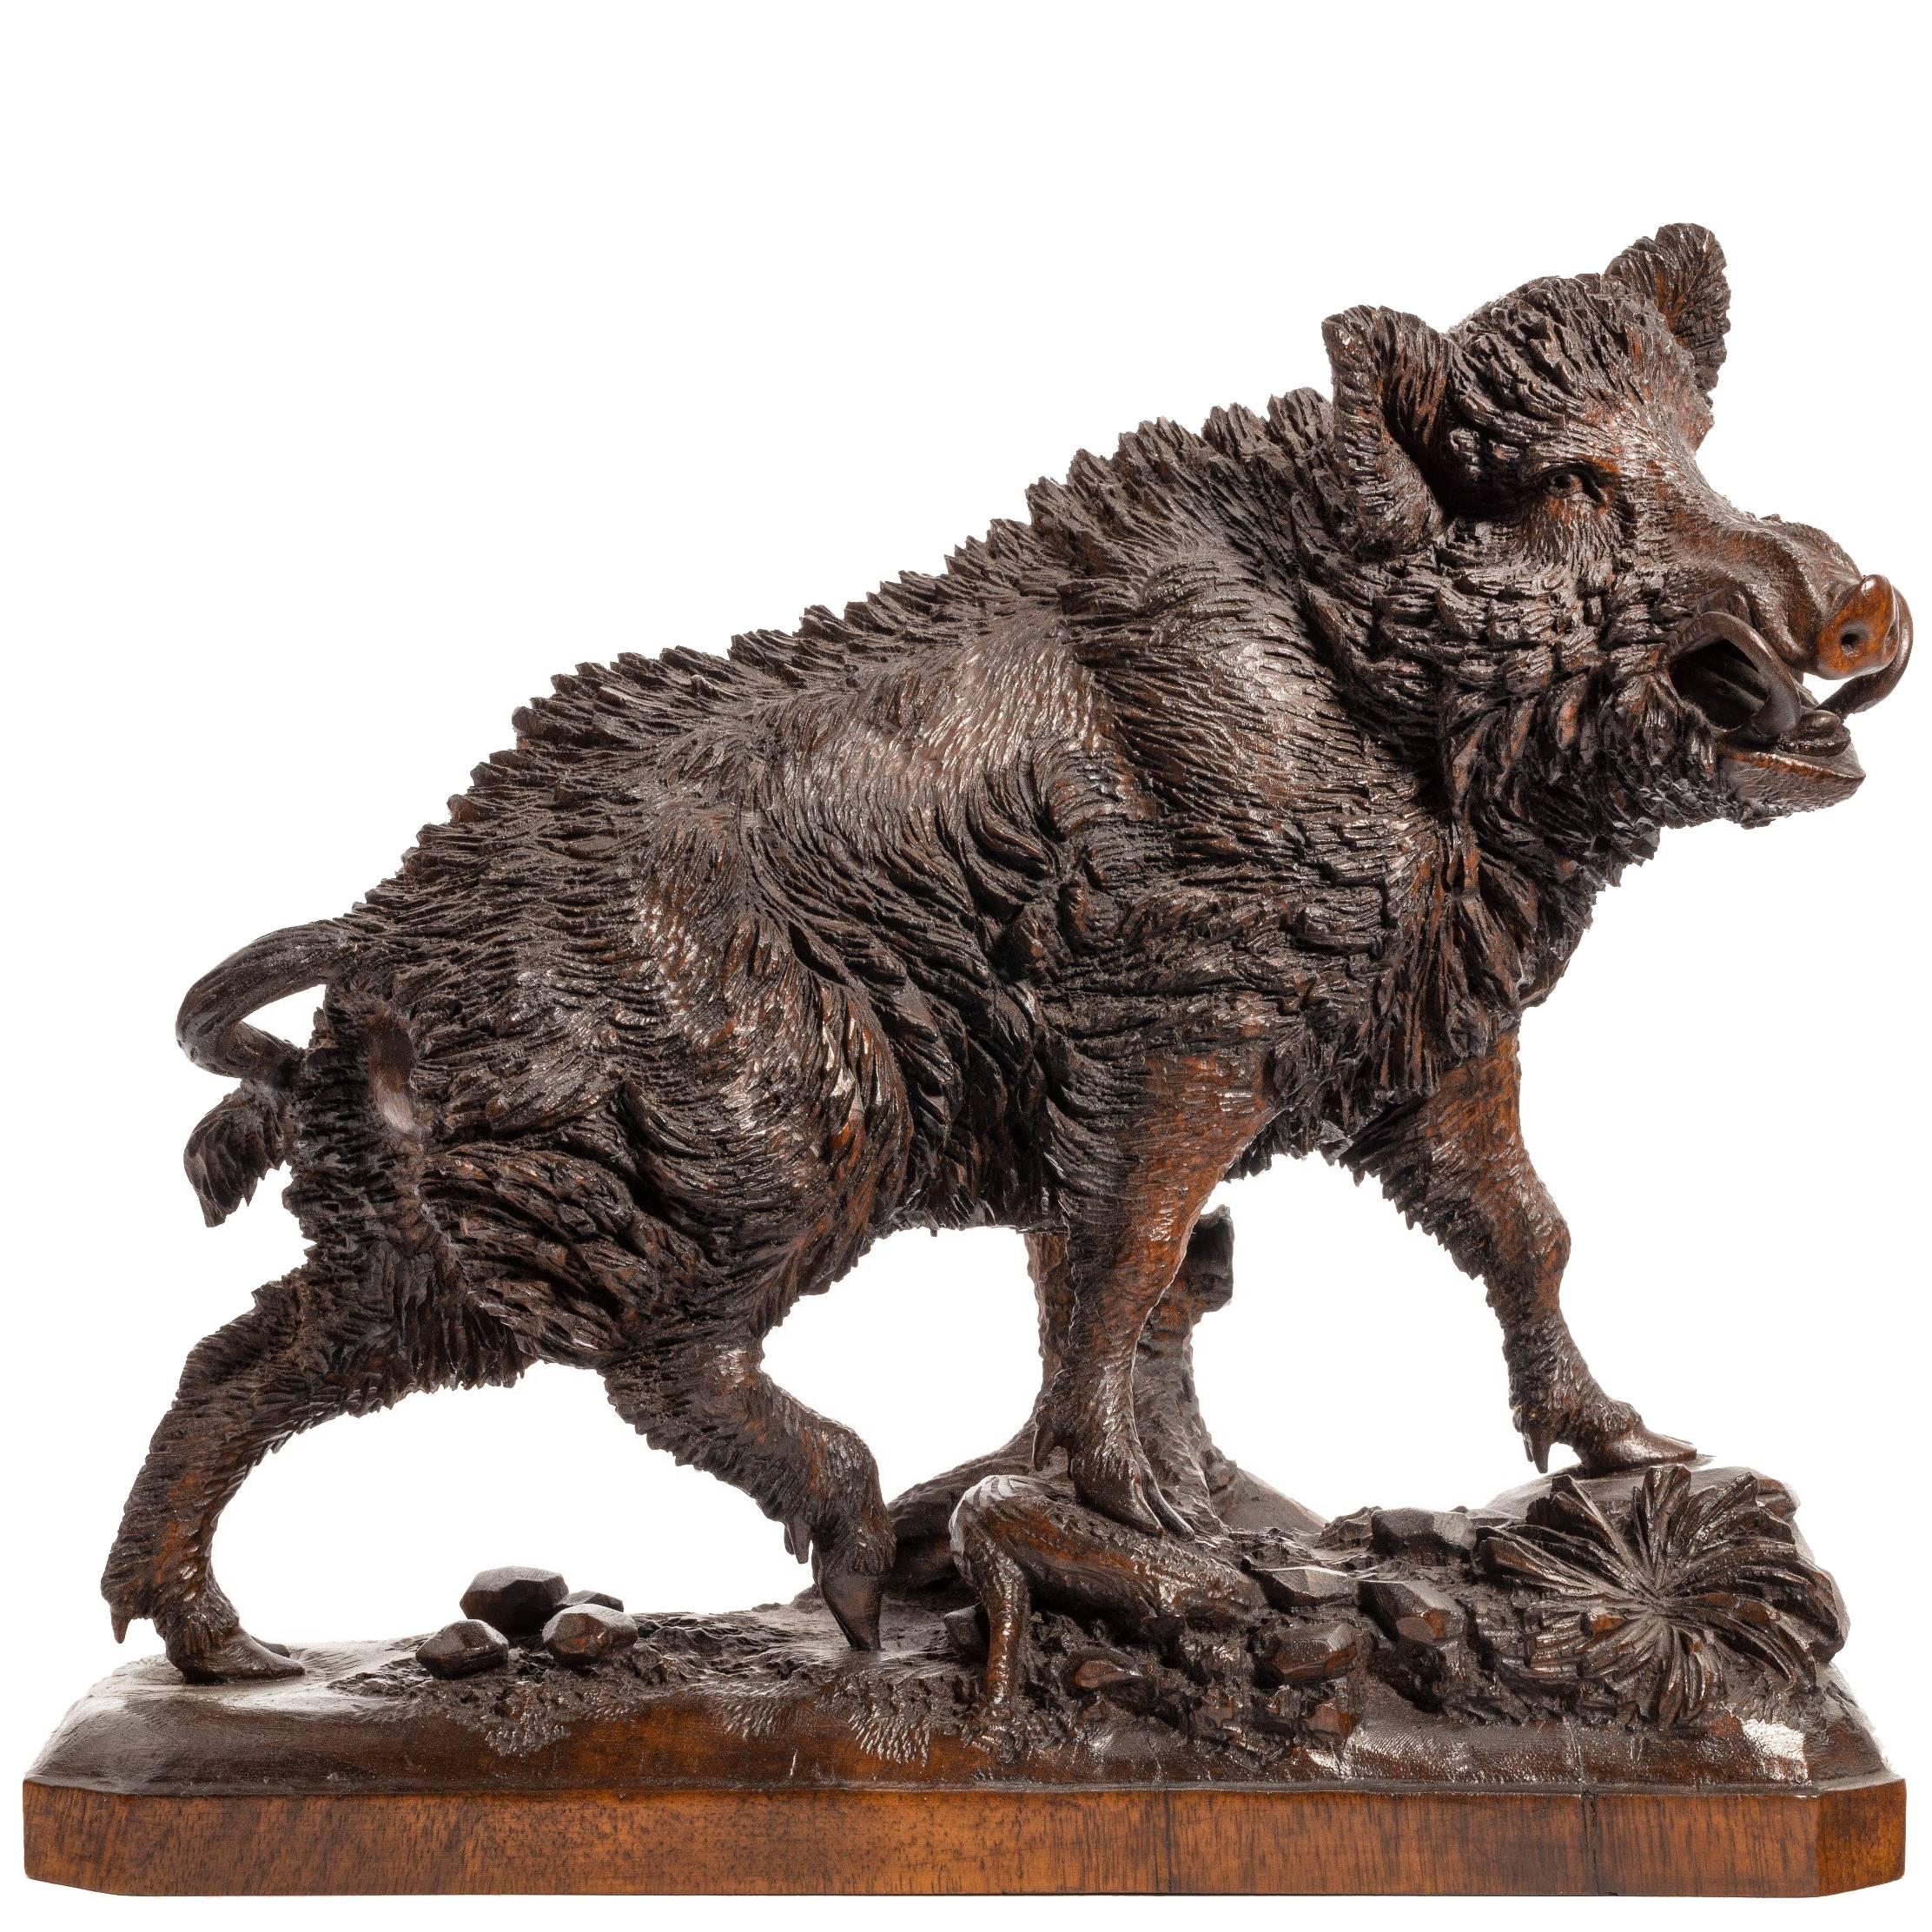 Linden Wood ‘Black Forest’ Model of a Wild Boar